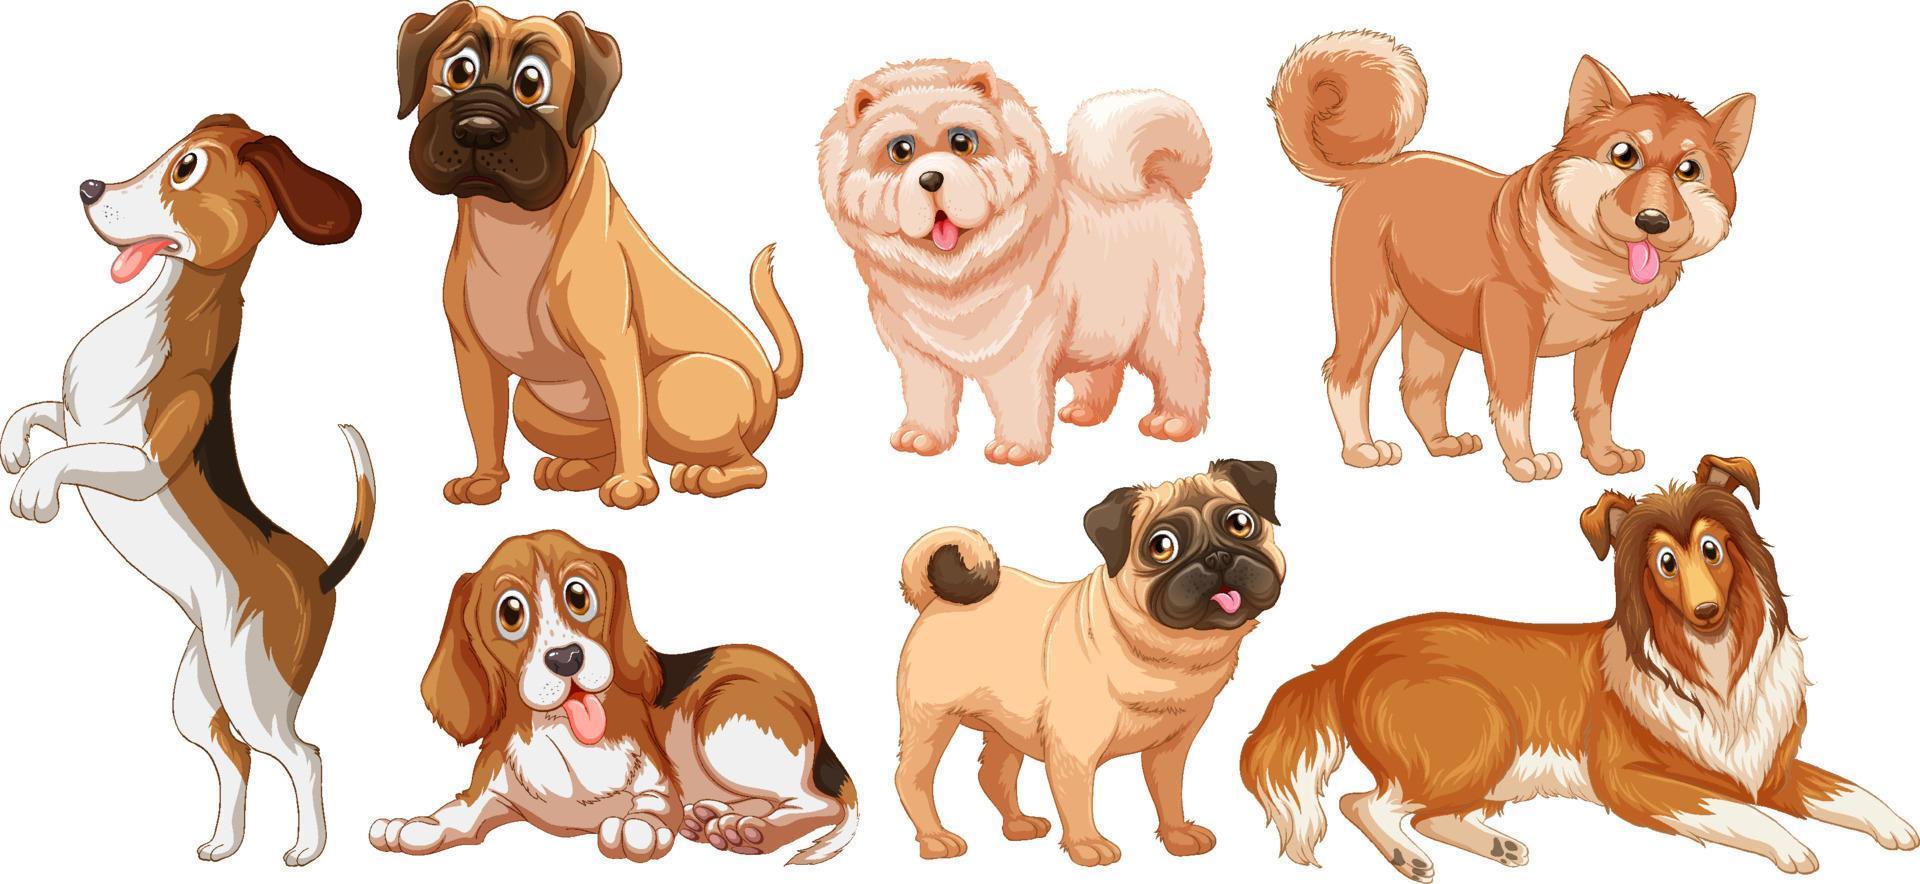 conjunto de diferentes perros lindos en estilo de dibujos animados vector